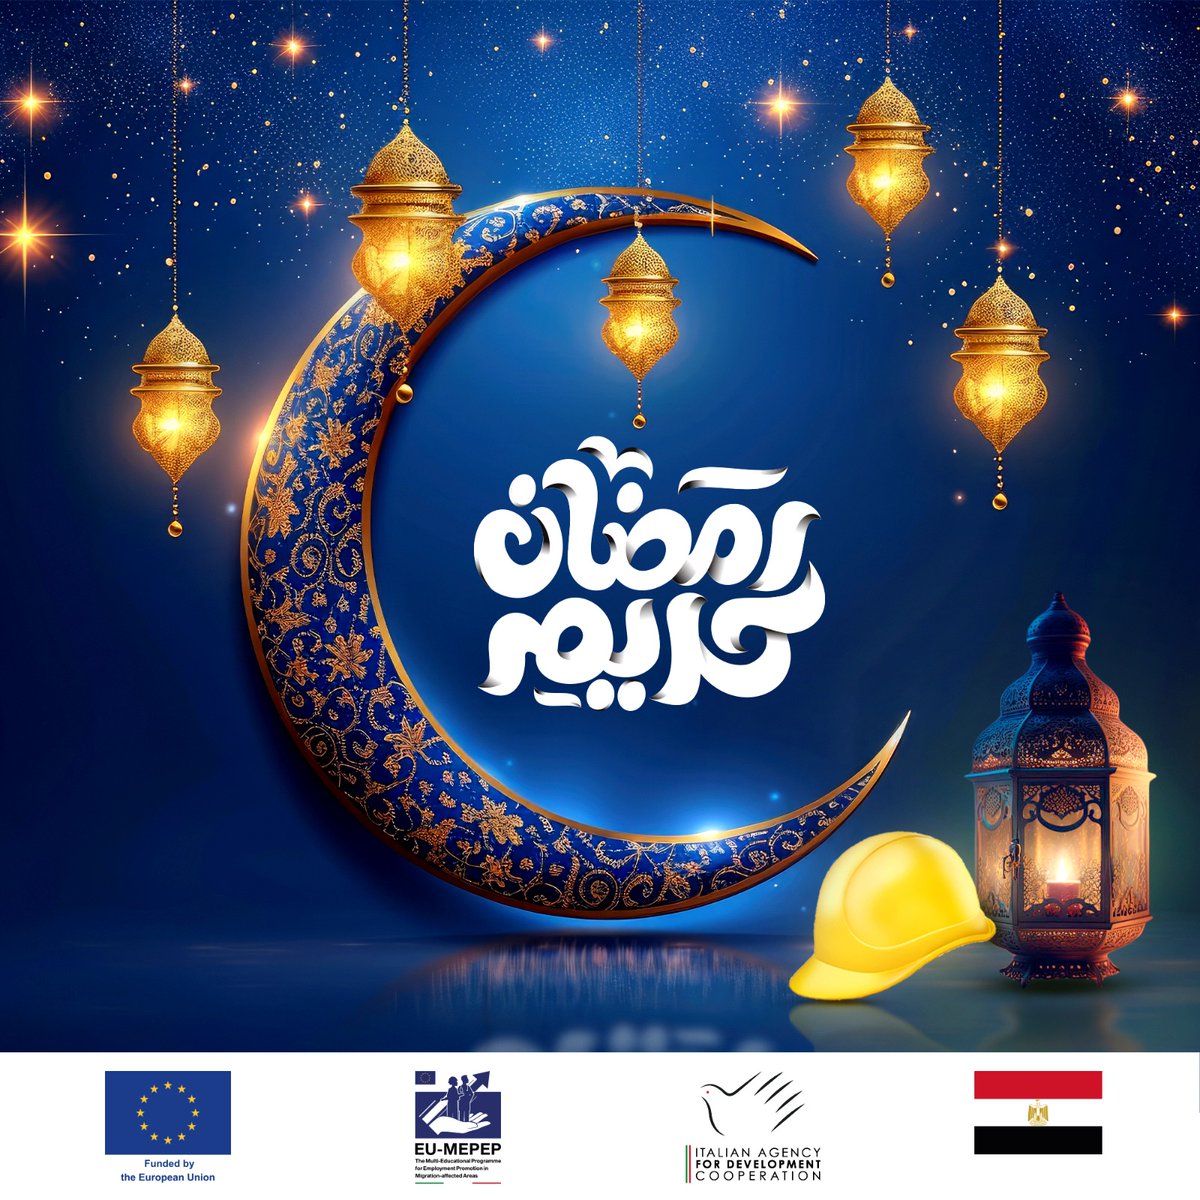 برنامج التعليم المتعدد لتعزيز العمالة في المناطق المتضررة من الهجرة يهنئكم بمناسبة قدوم شهر رمضان المبارك . MEPEP wishes you a Blessed Ramadan. #اشتغل_فنى #EUinEgypt #TVET_EGYPT #EU4Egypt